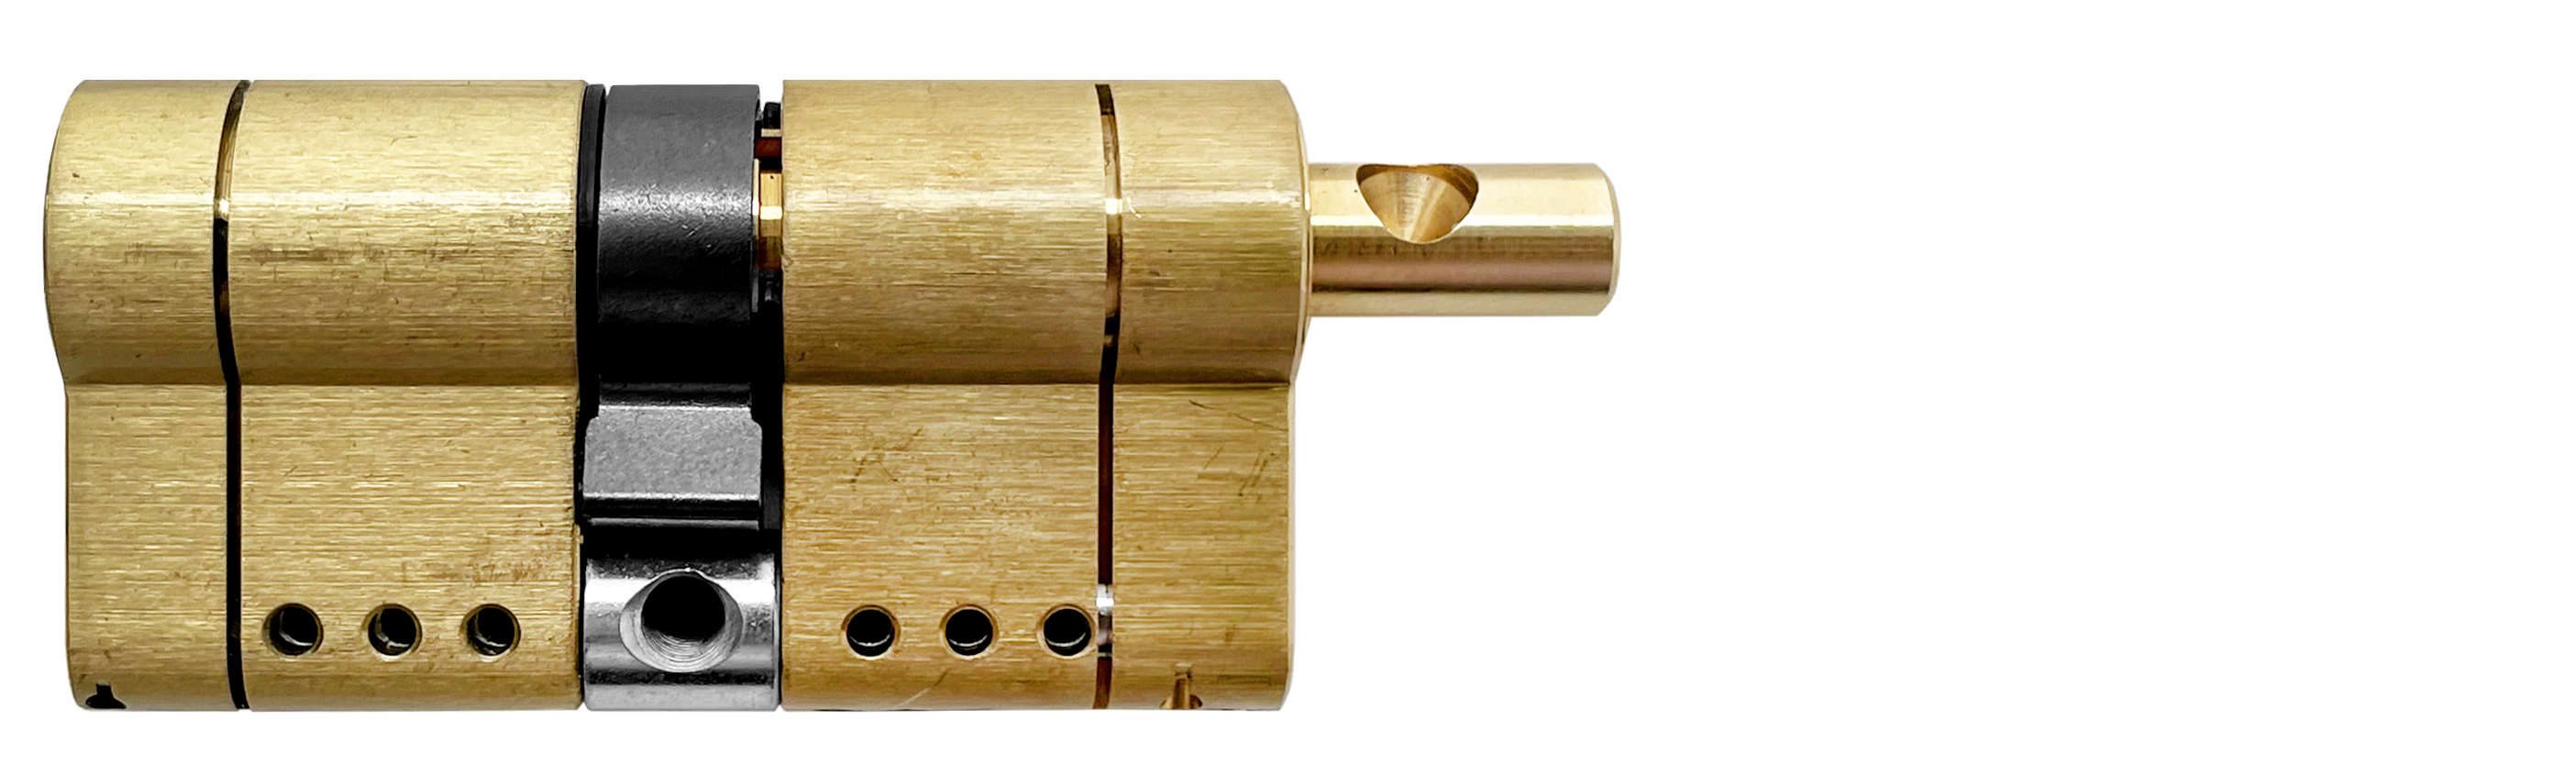 Цилиндр MOTTURA PRO 97(46+51)мм, ключ/вертушка, латунь формы для наращивания ногтей узкие 50 шт золотистый